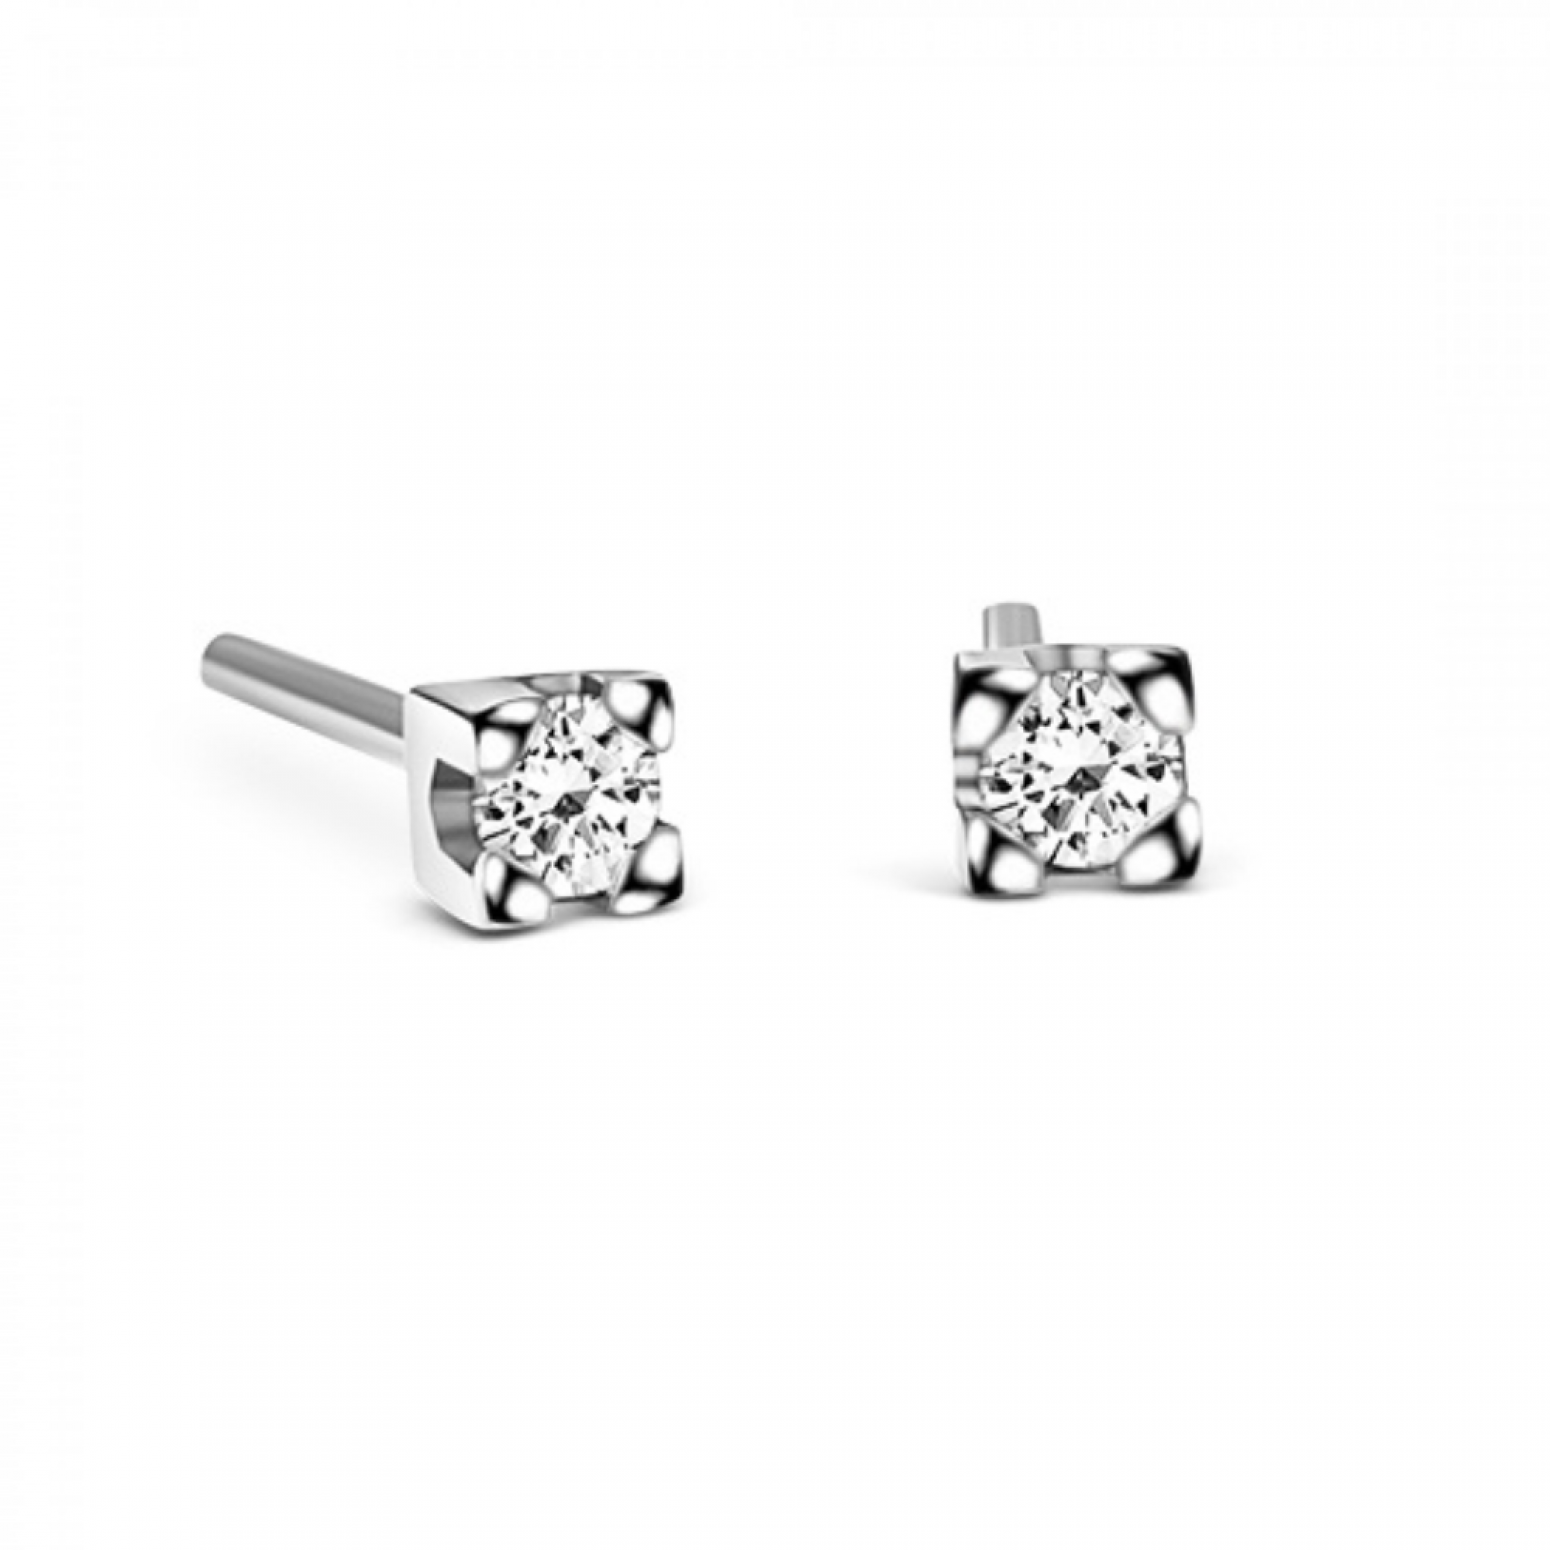 Solitaire earrings, 18K white gold with diamonds 0.20ct, VS1, G sk3795 EARRINGS Κοσμηματα - chrilia.gr